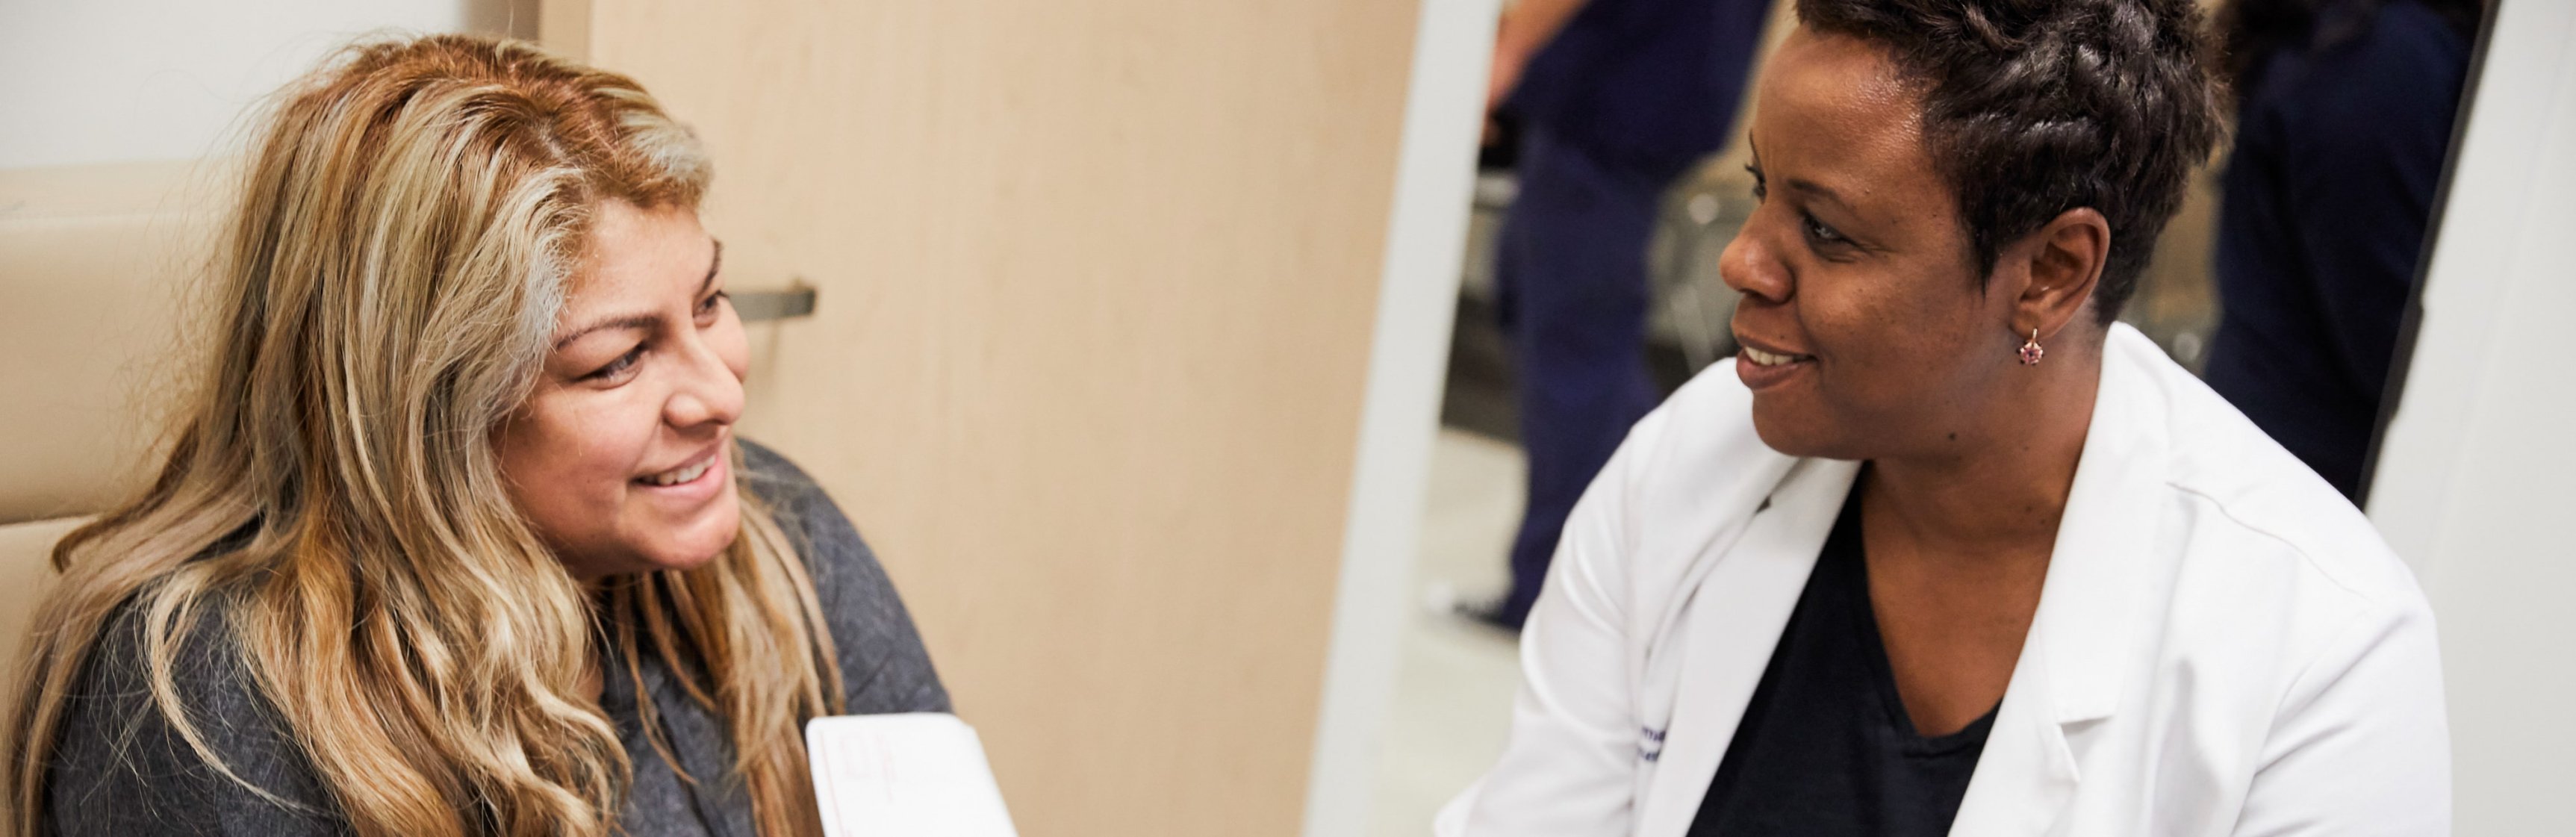 Paciente mujer latina sonriendo a una médica de color con bata blanca